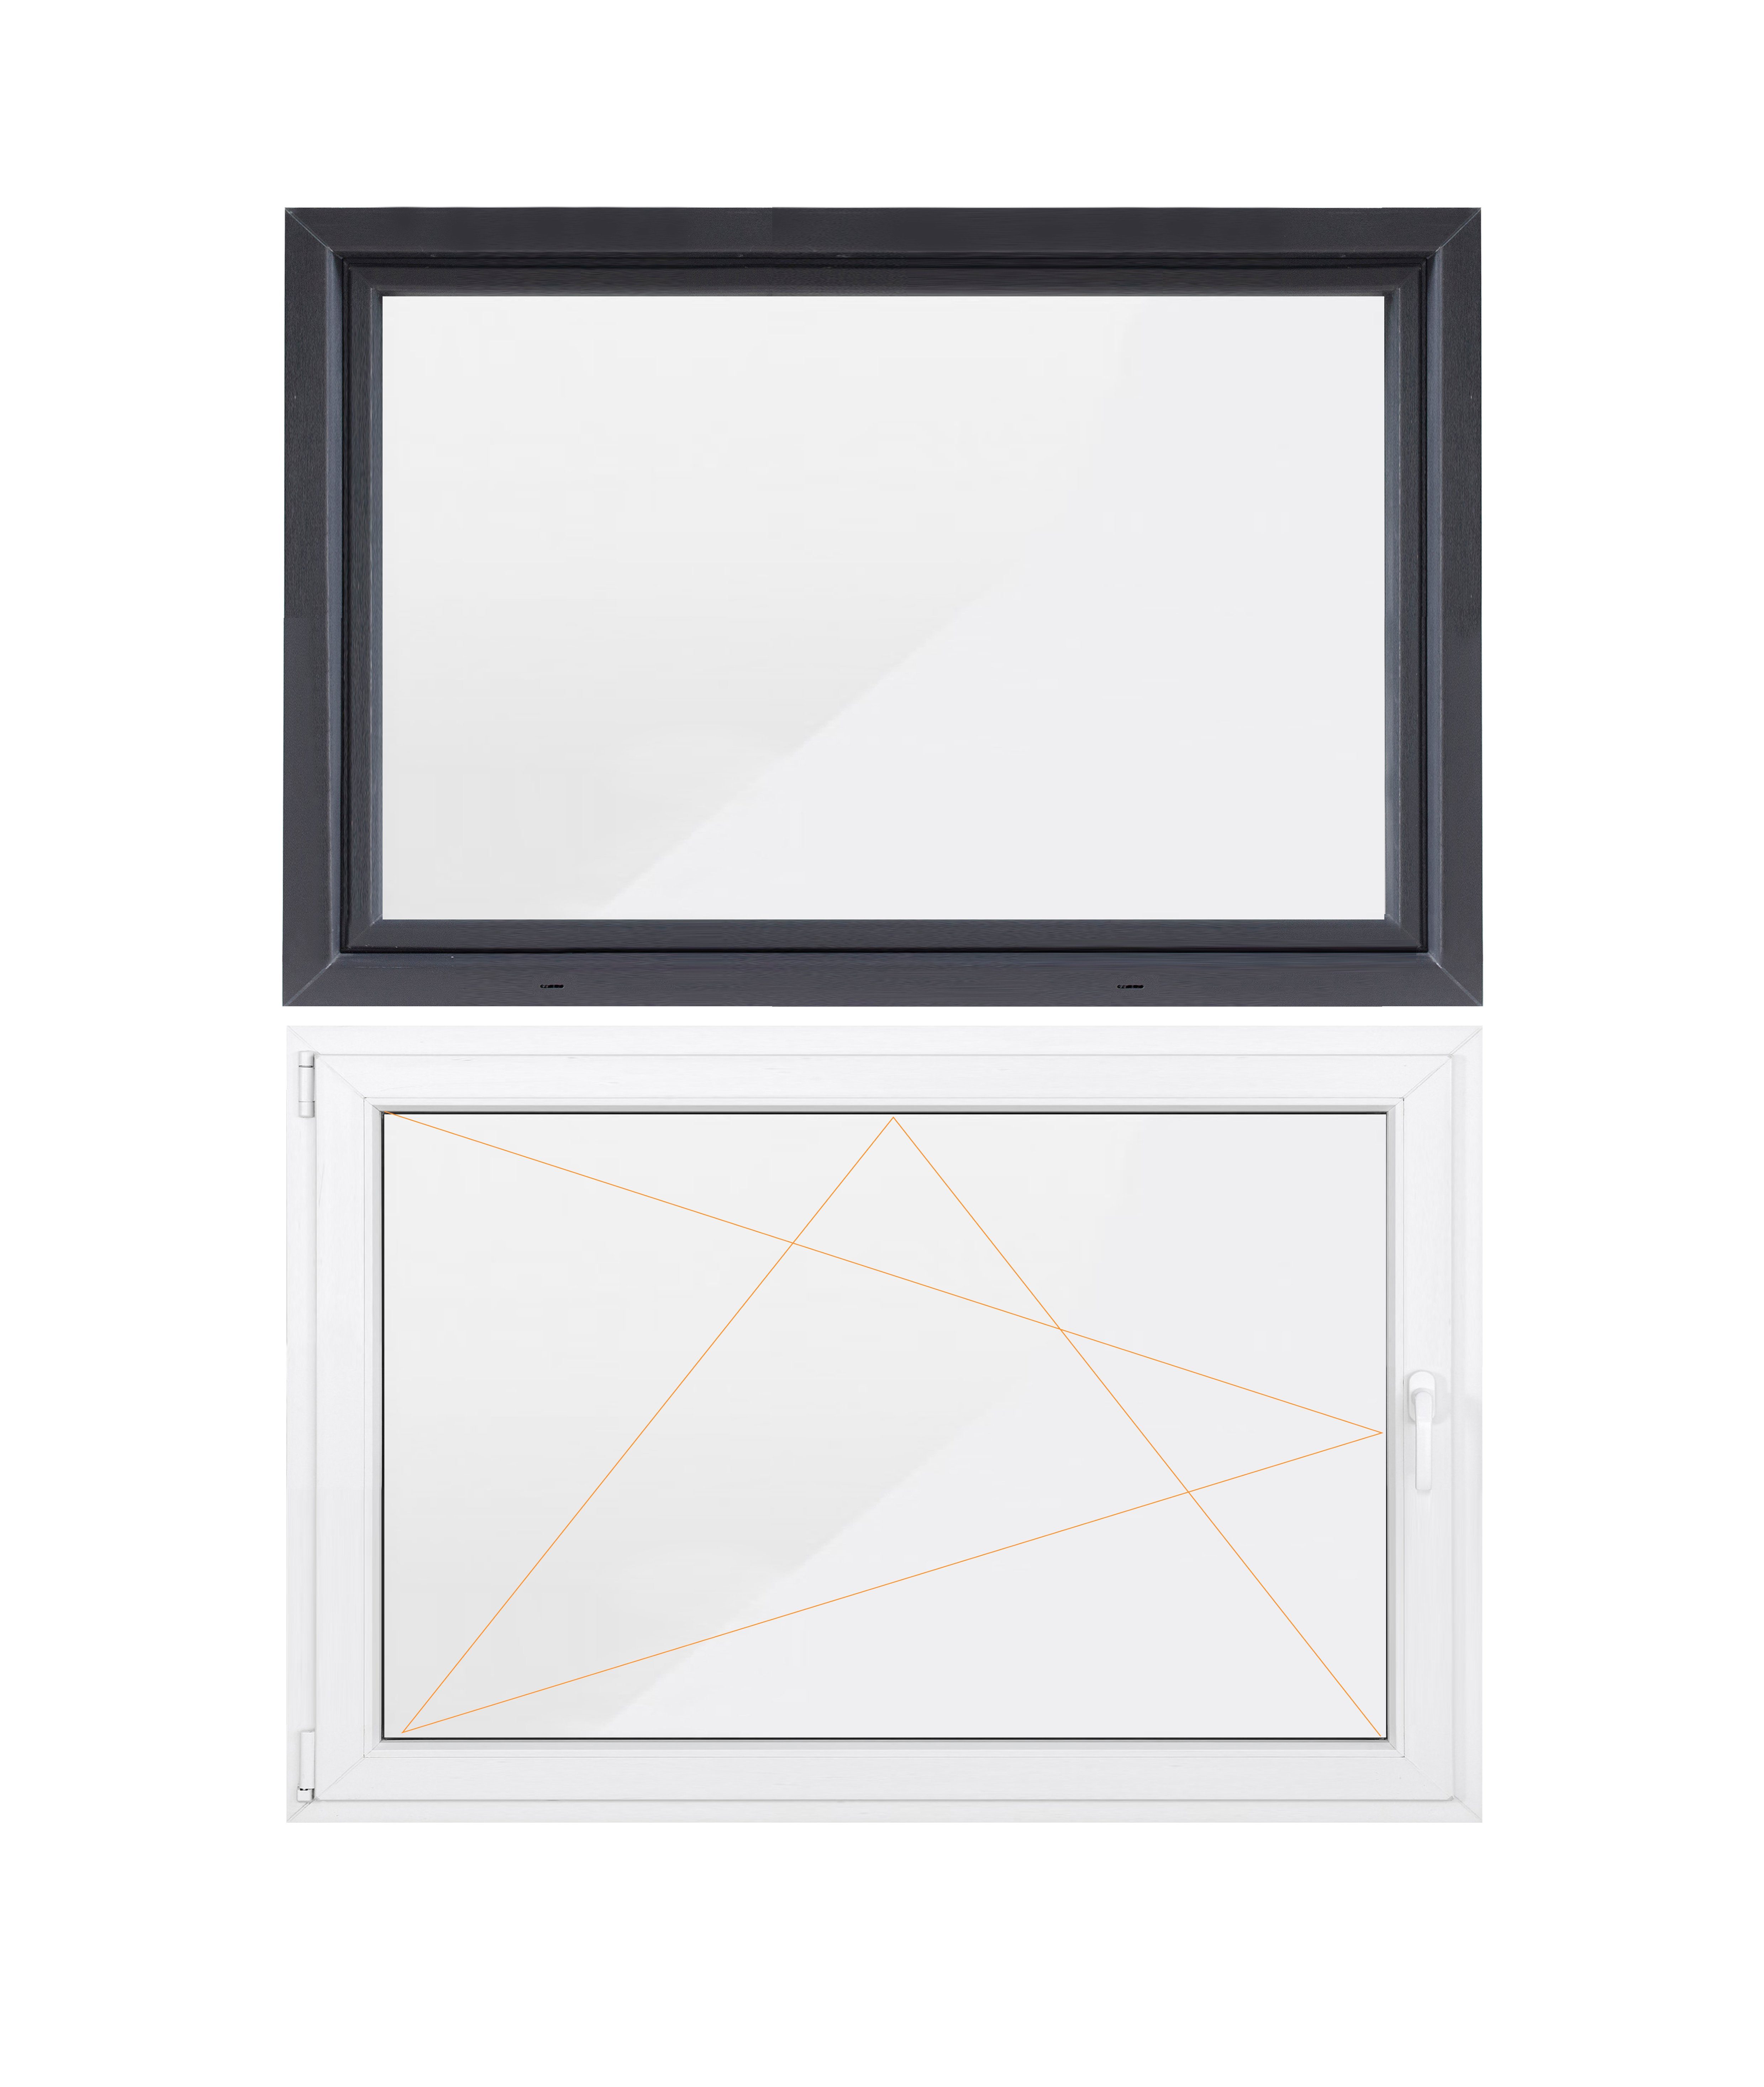 innen weiß/außen mahagoni 60 mm Profil BxH: 80 x 40 cm Kunststoff DIN Rechts Fenster 3 fach Verglasung Kellerfenster 800 x 400 mm